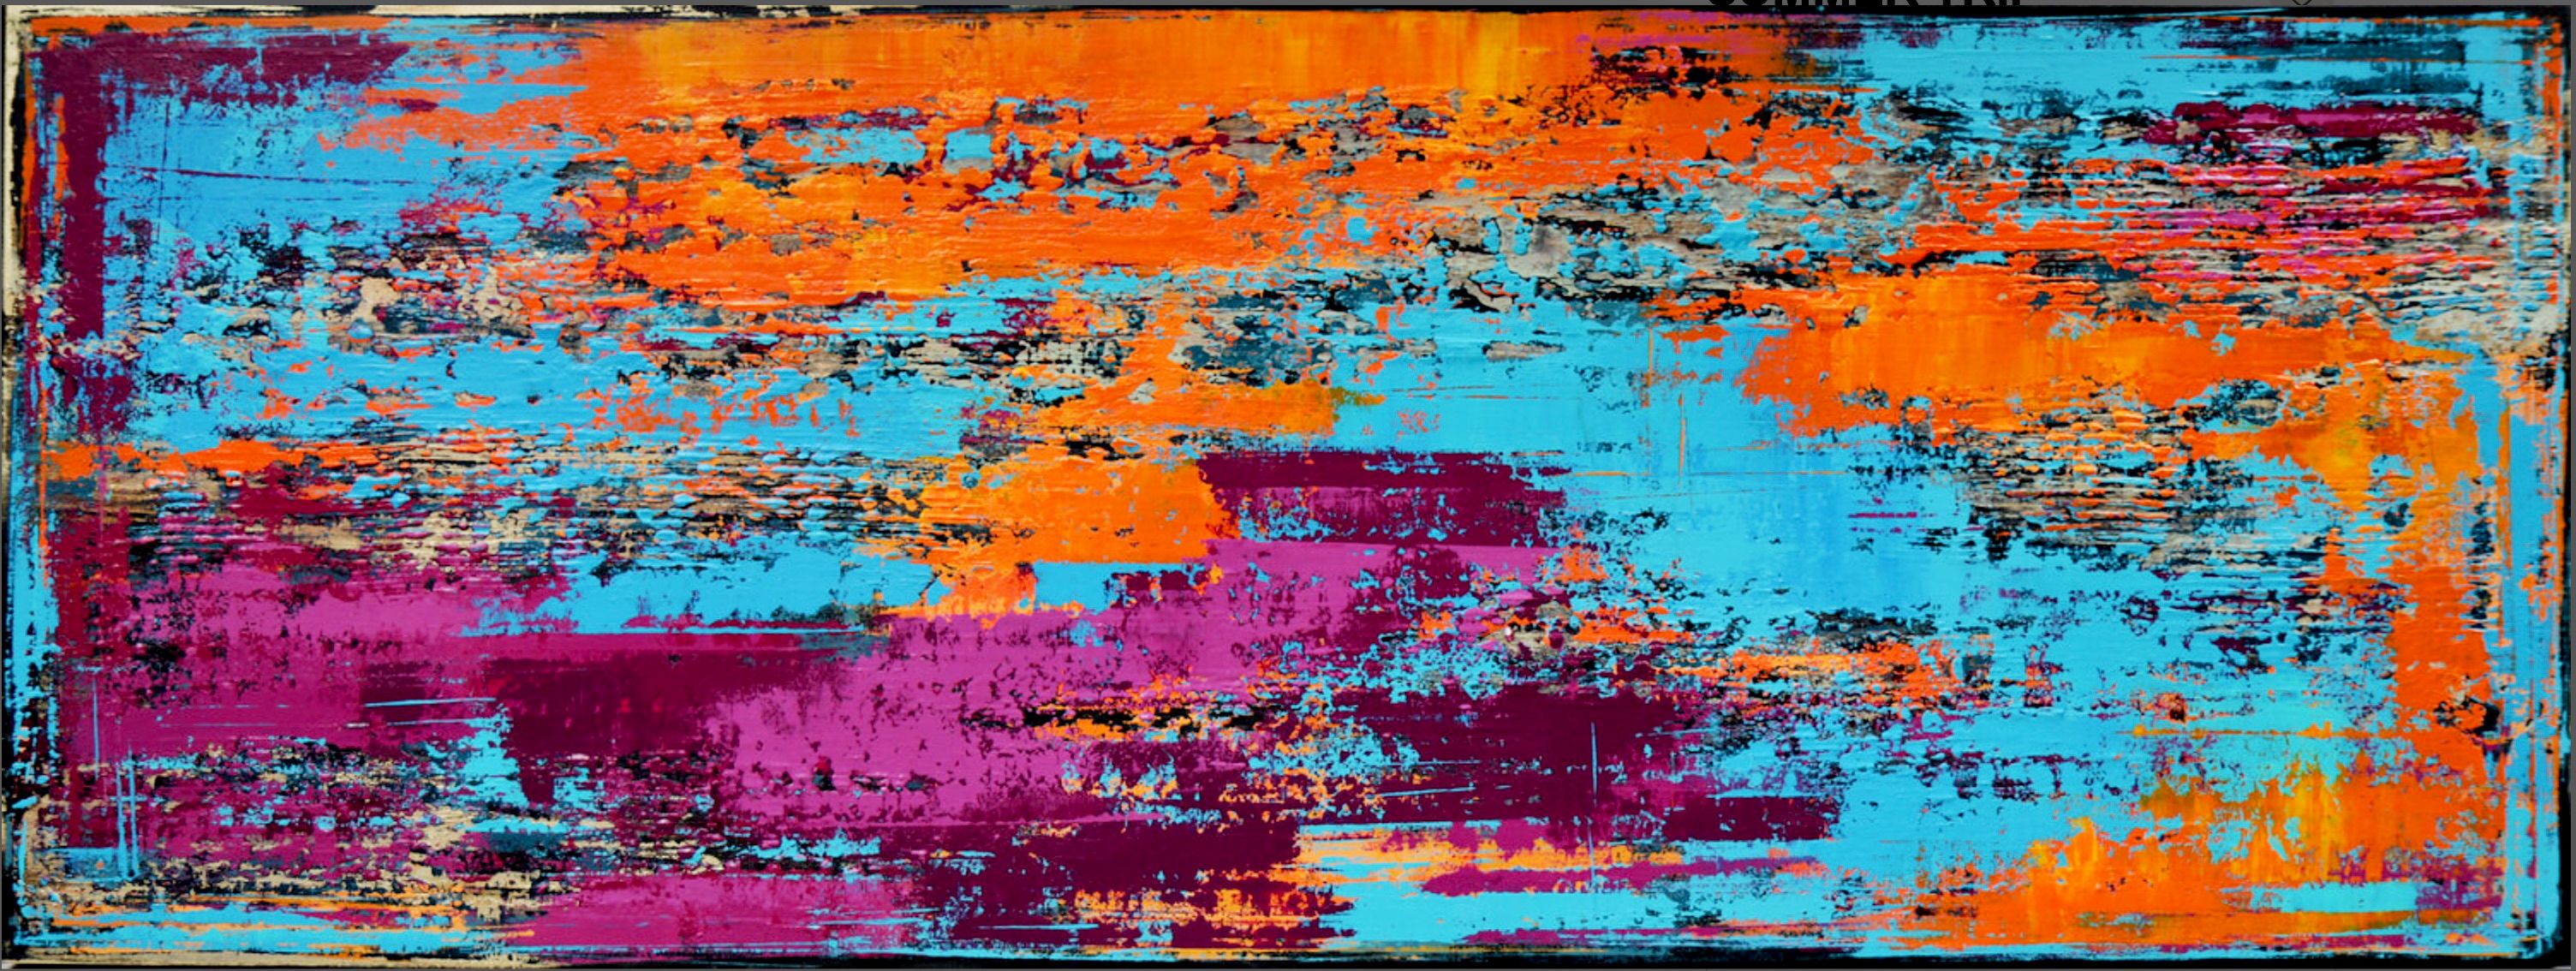 Dans le "SUMMER TRIP" d'Inez Froehlich, une peinture abstraite et colorée avec des structures. Des couleurs chaudes et vives en orange , bleu, turquoise et violet. Le style de la peinture est shabby chic, style industriel, vintage, rétro.